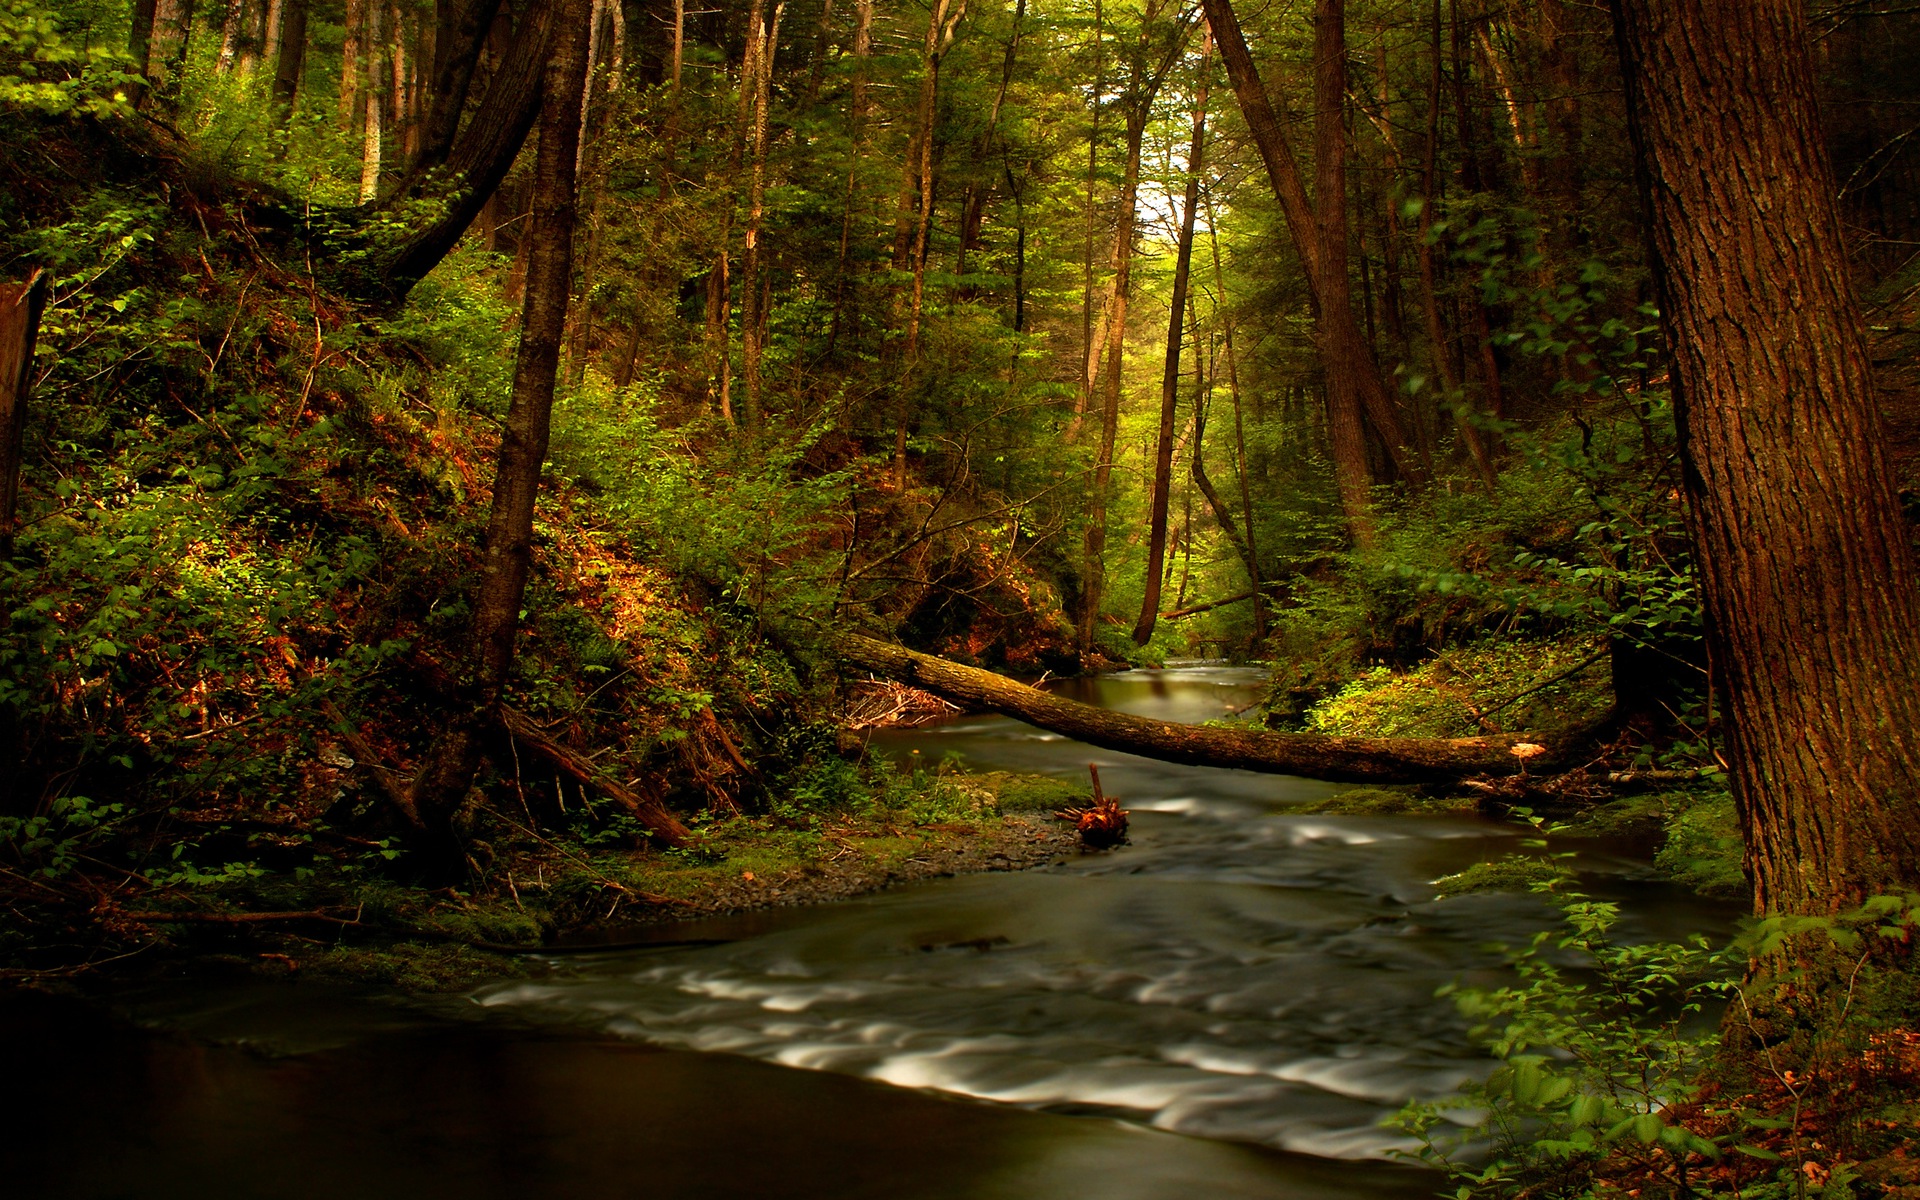 A serene forest scene as a high-definition desktop wallpaper.